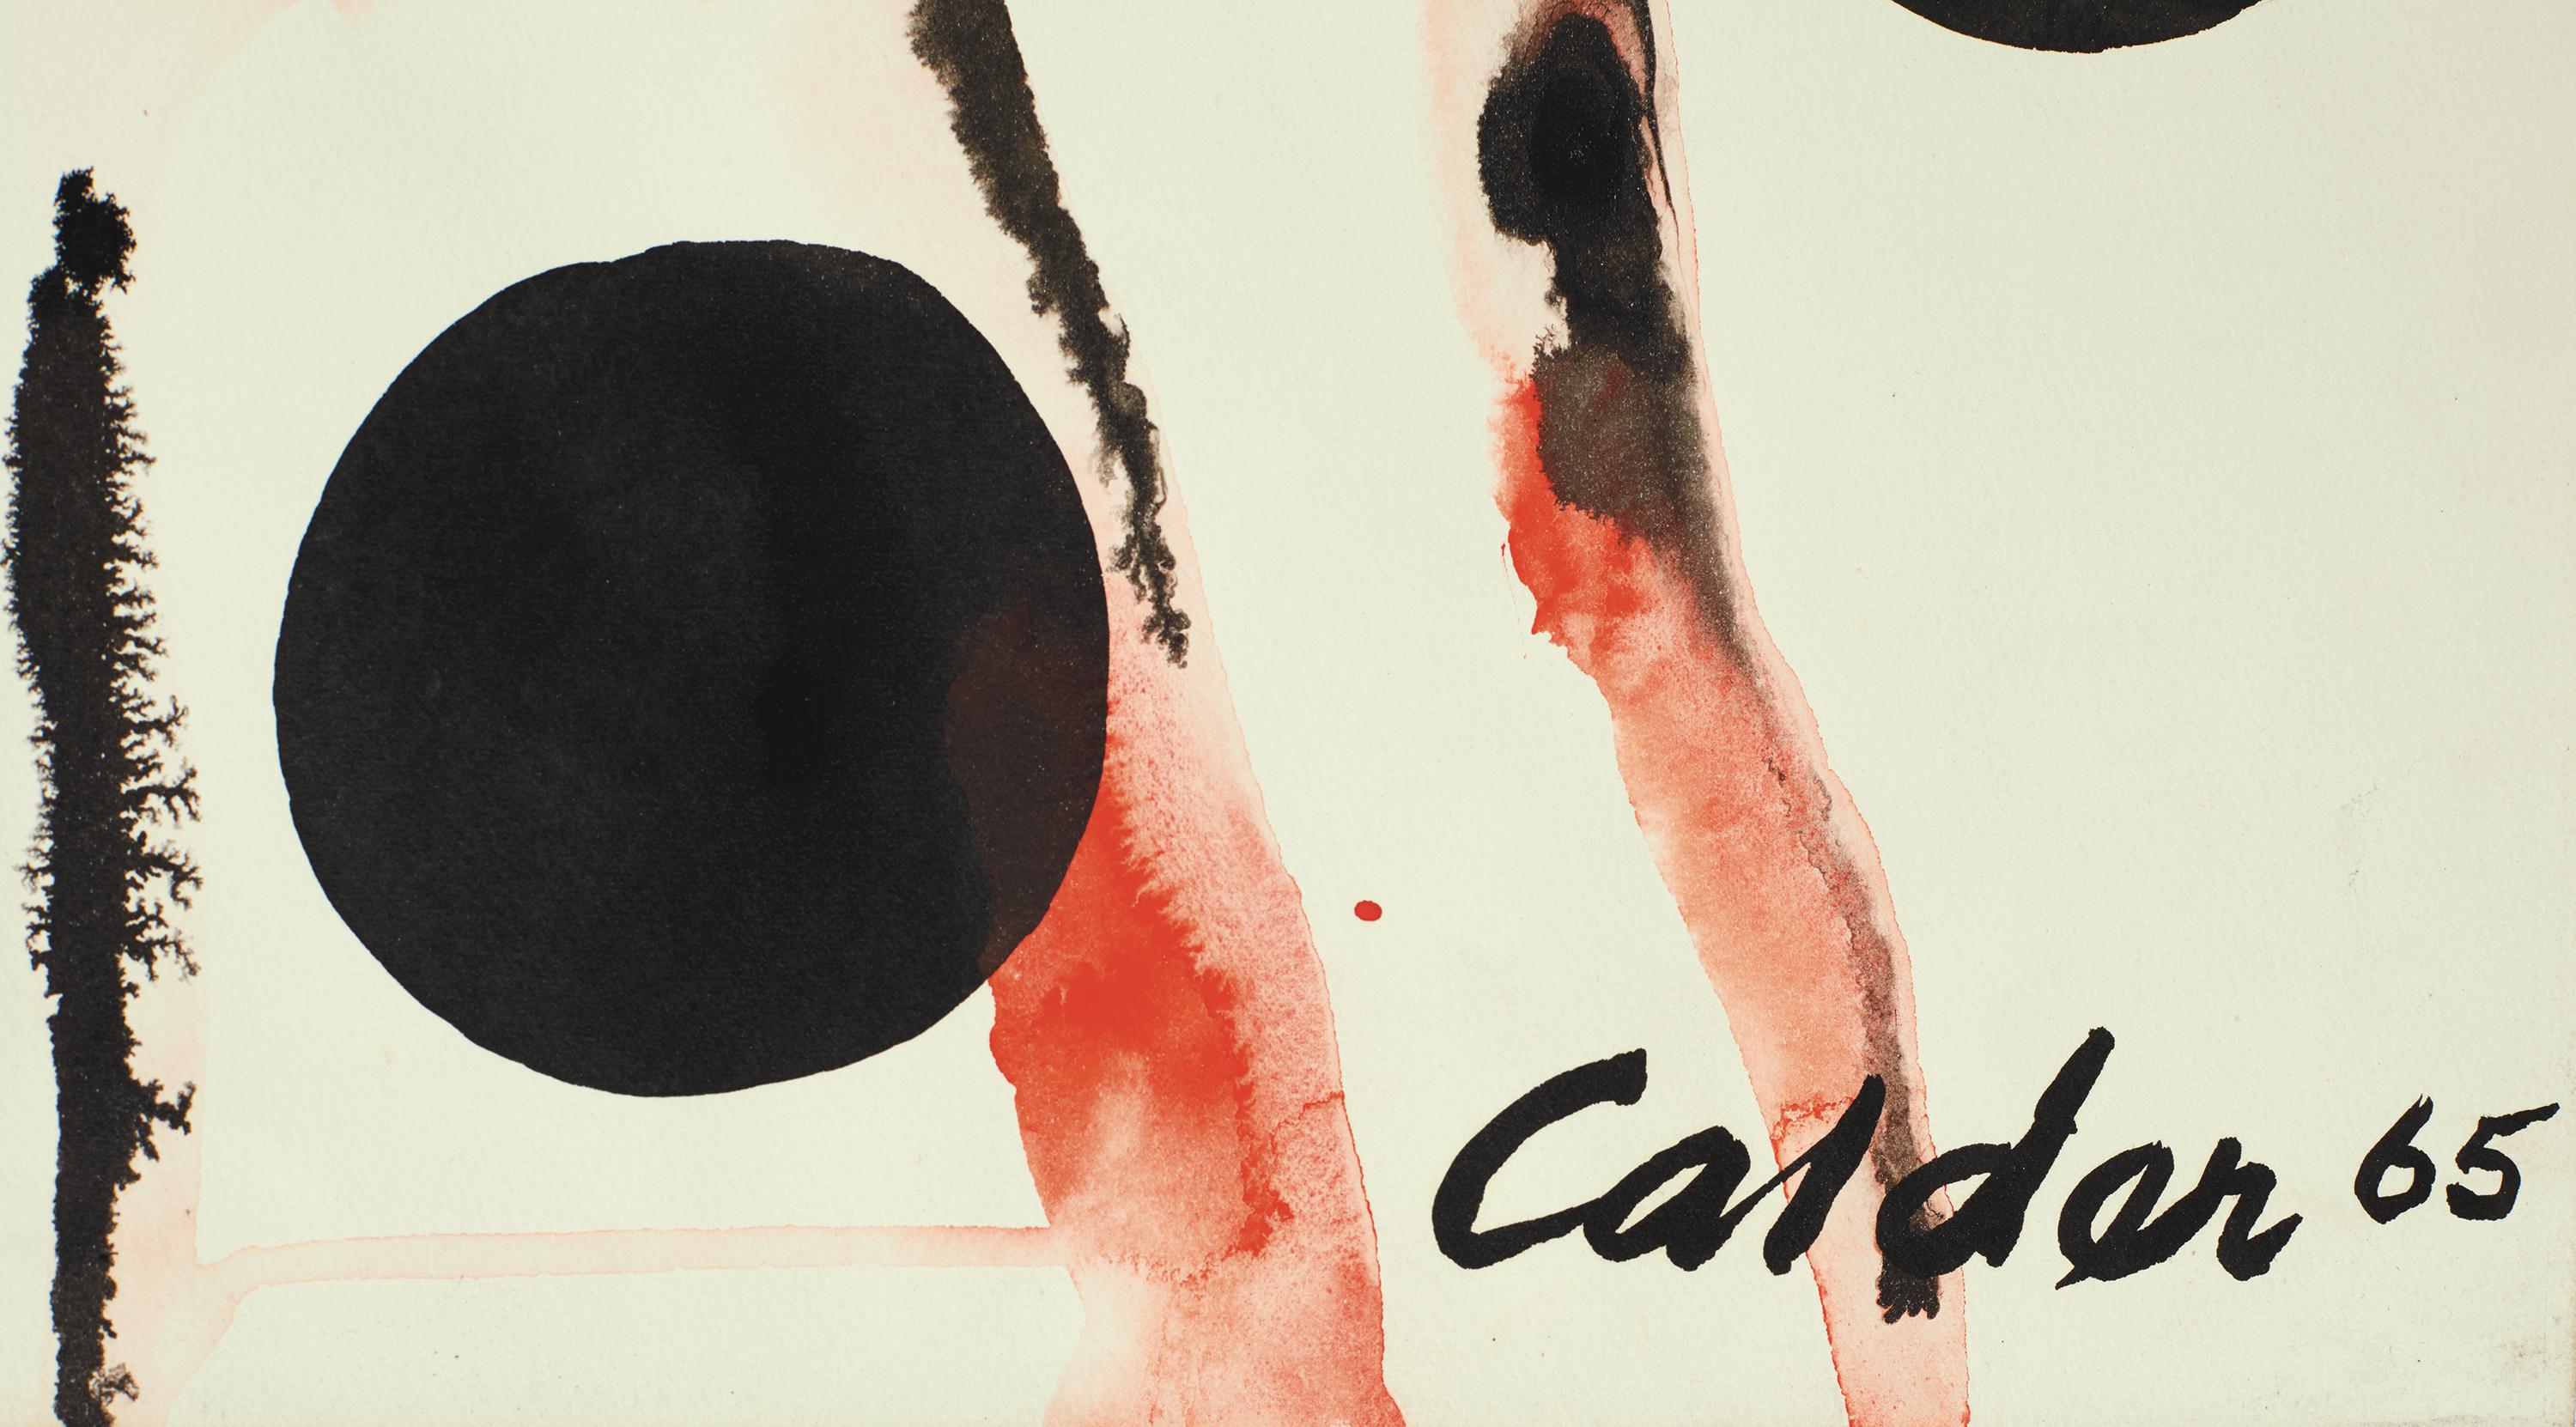 Organismes coloniaux - Painting de Alexander Calder